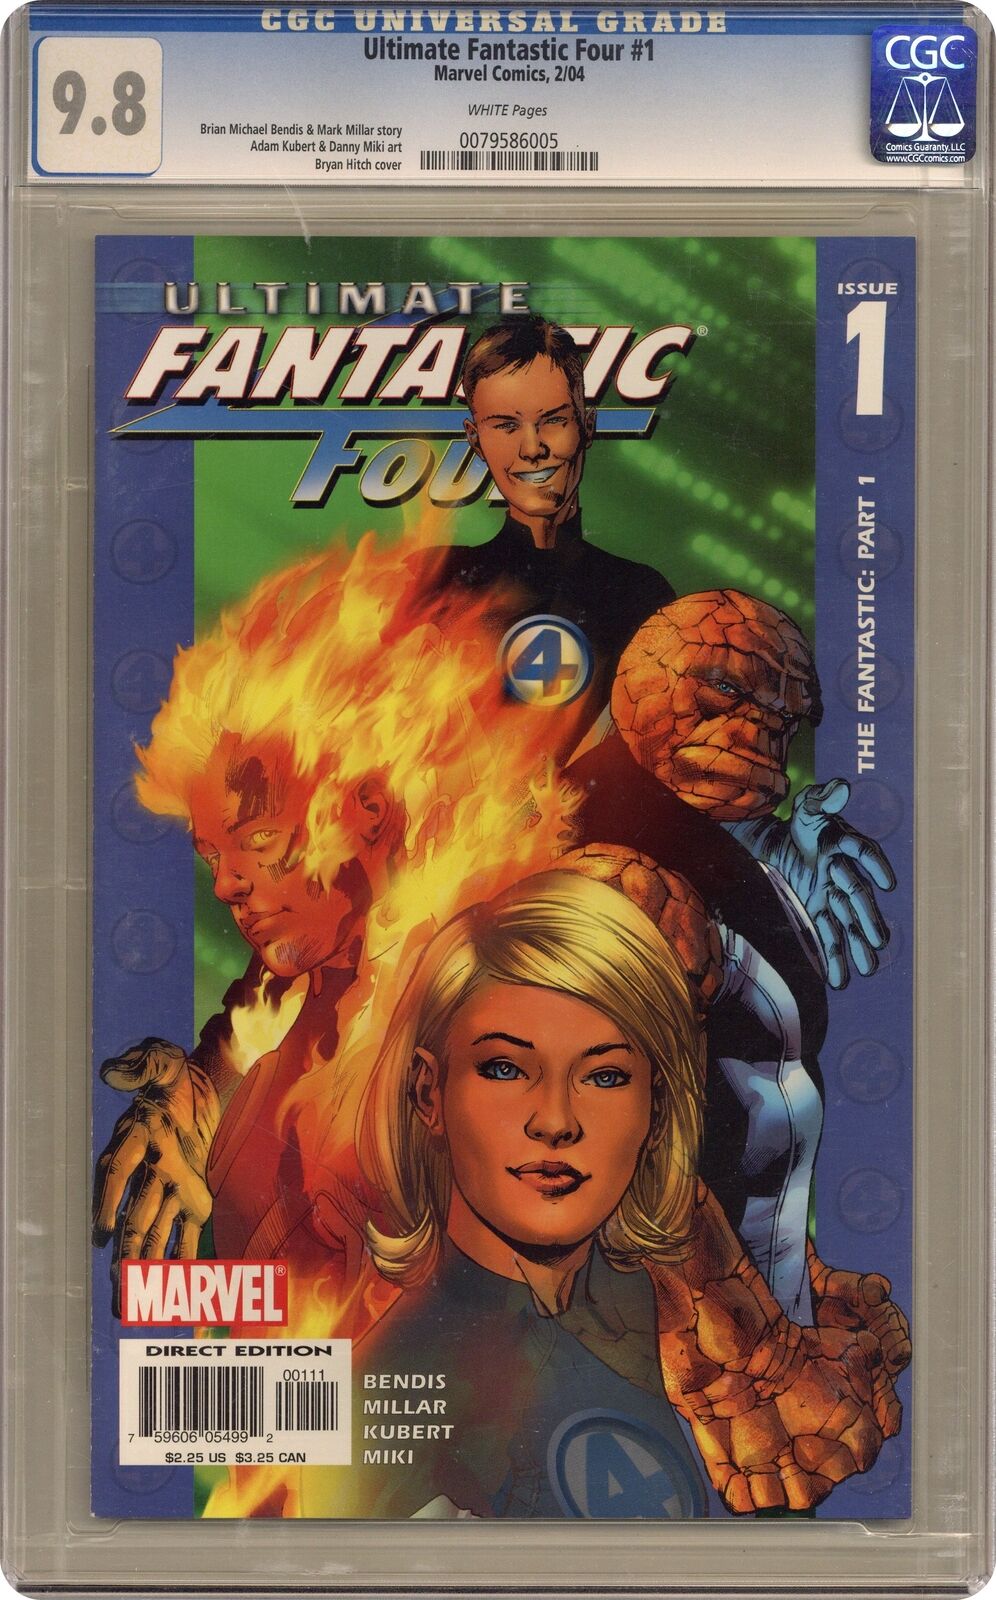 Ultimate Fantastic Four #1 CGC 9.8 2004 0079586005